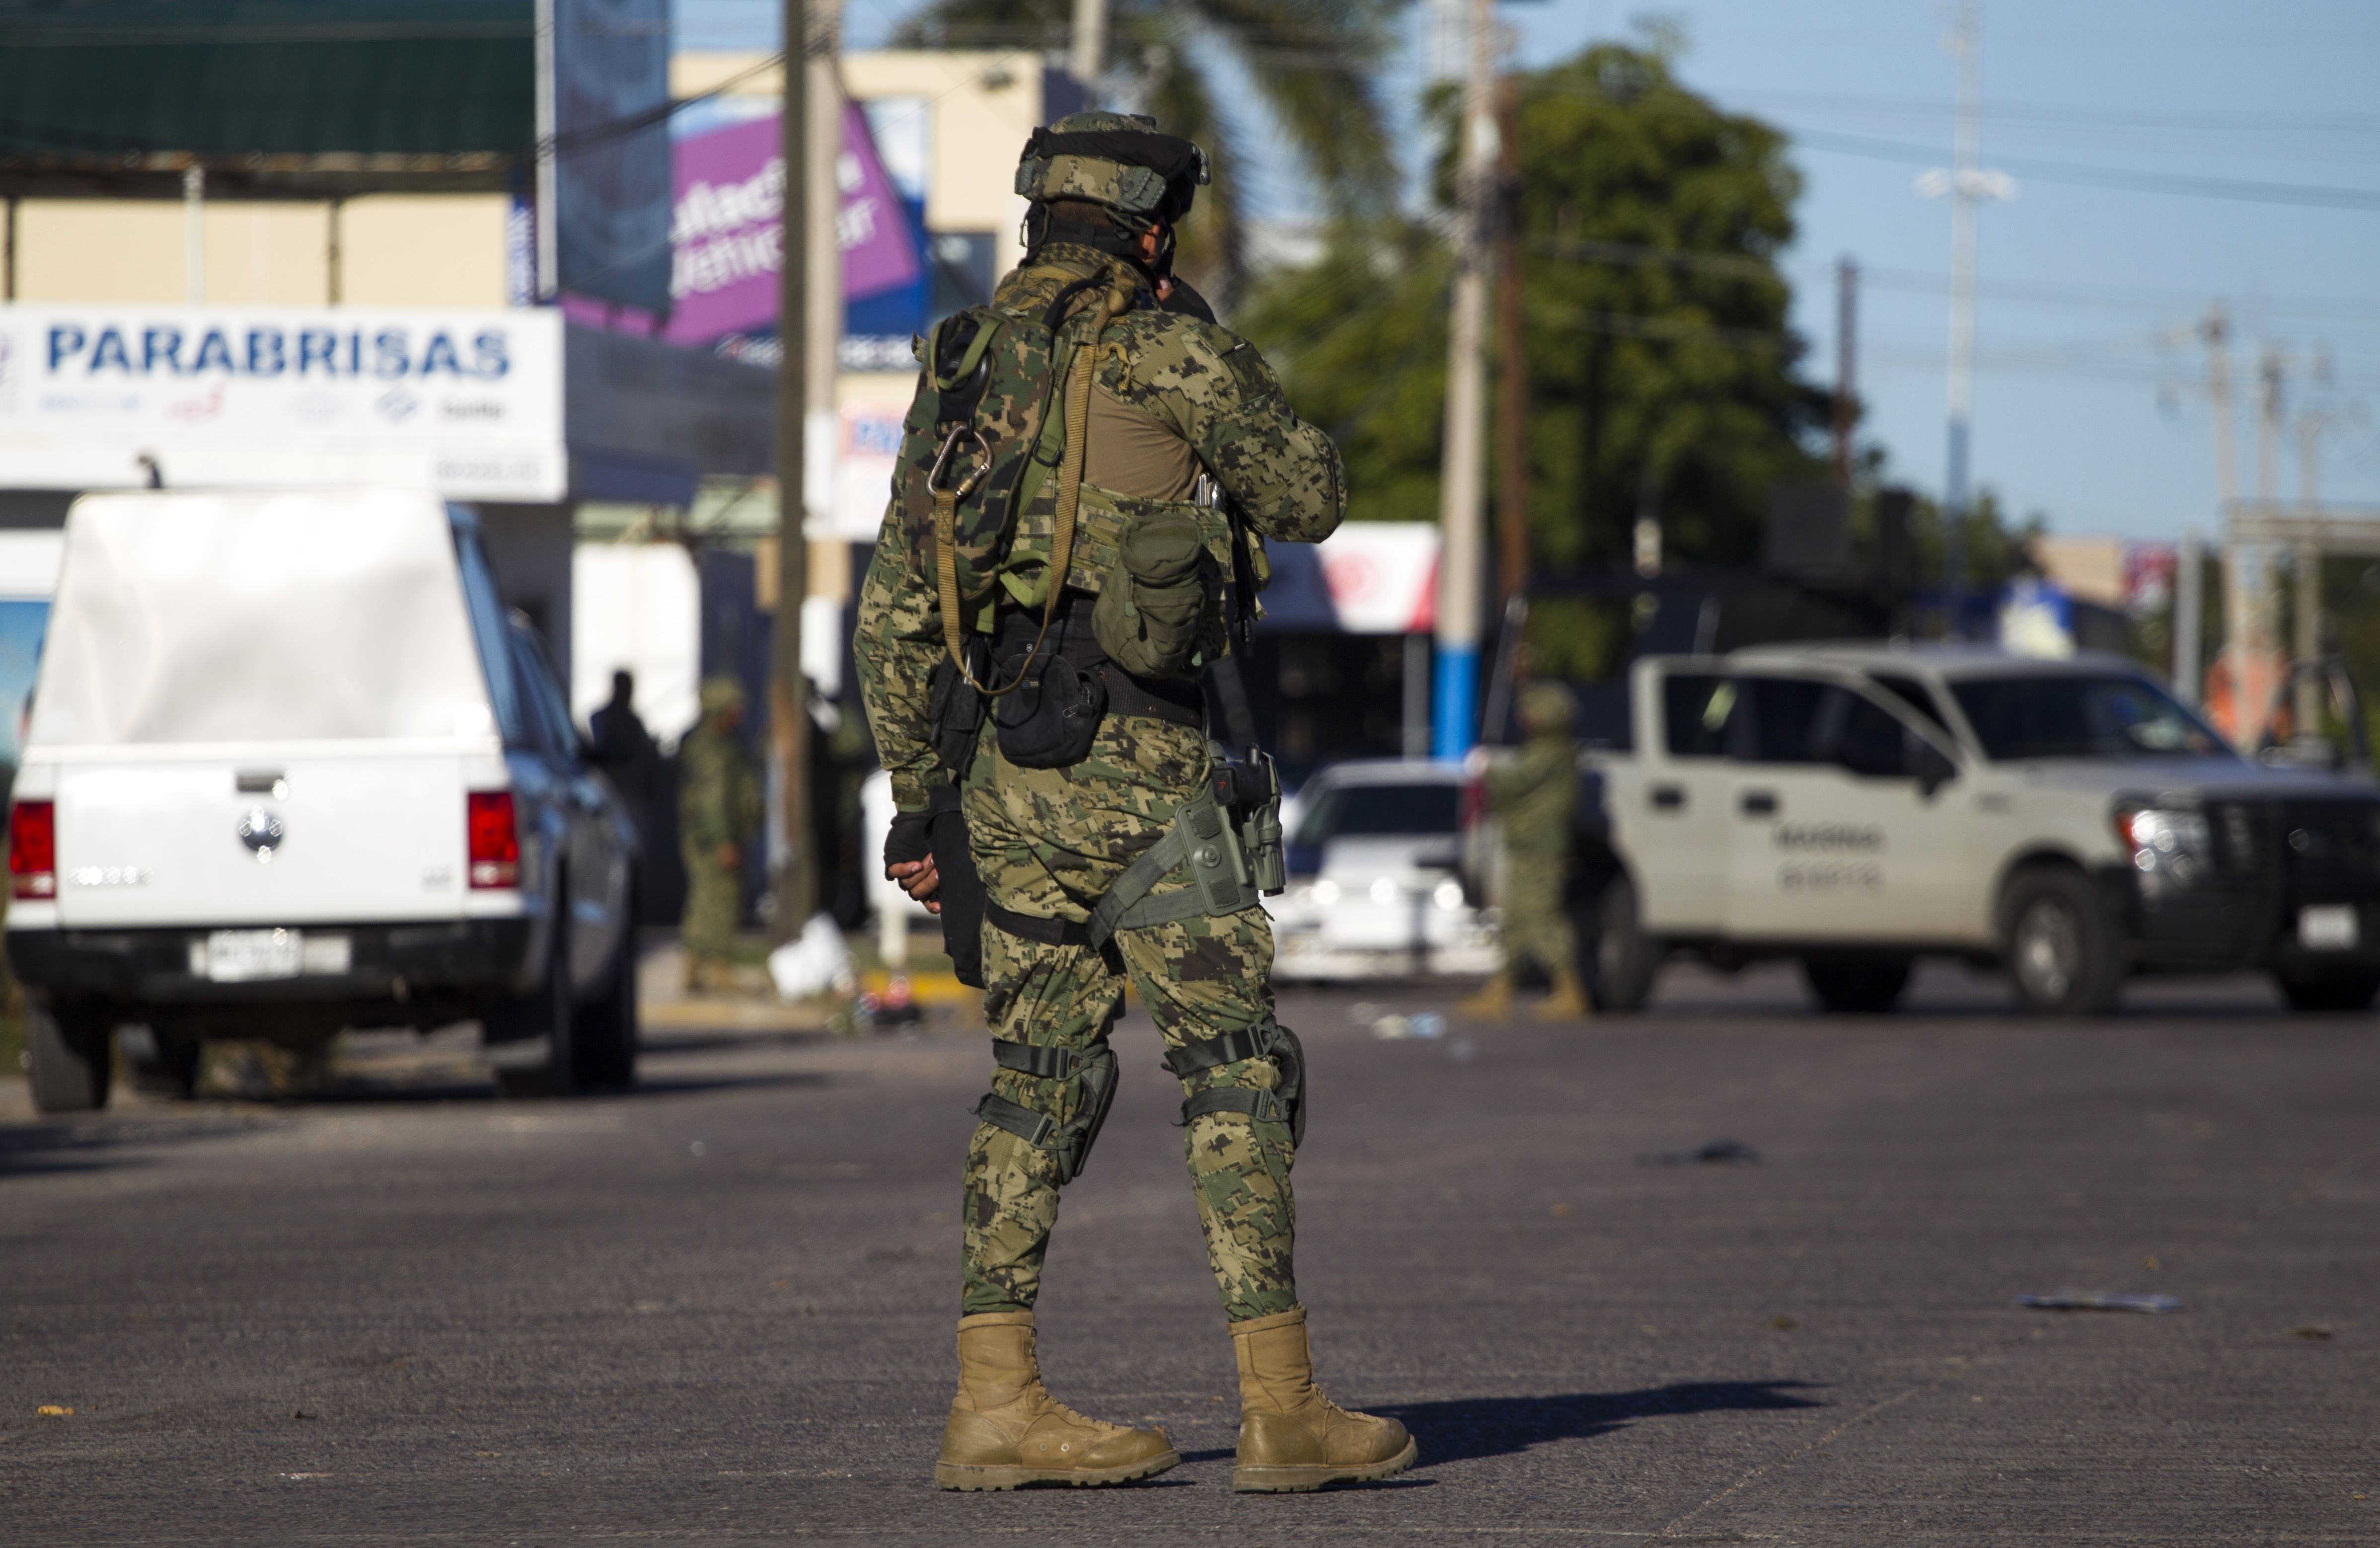 Las autoridades de México investigan la muerte de tres turistas estadounidenses, cuyos cuerpos fueron localizado en una casa de alquiler. (Foto Prensa Libre: AFP)